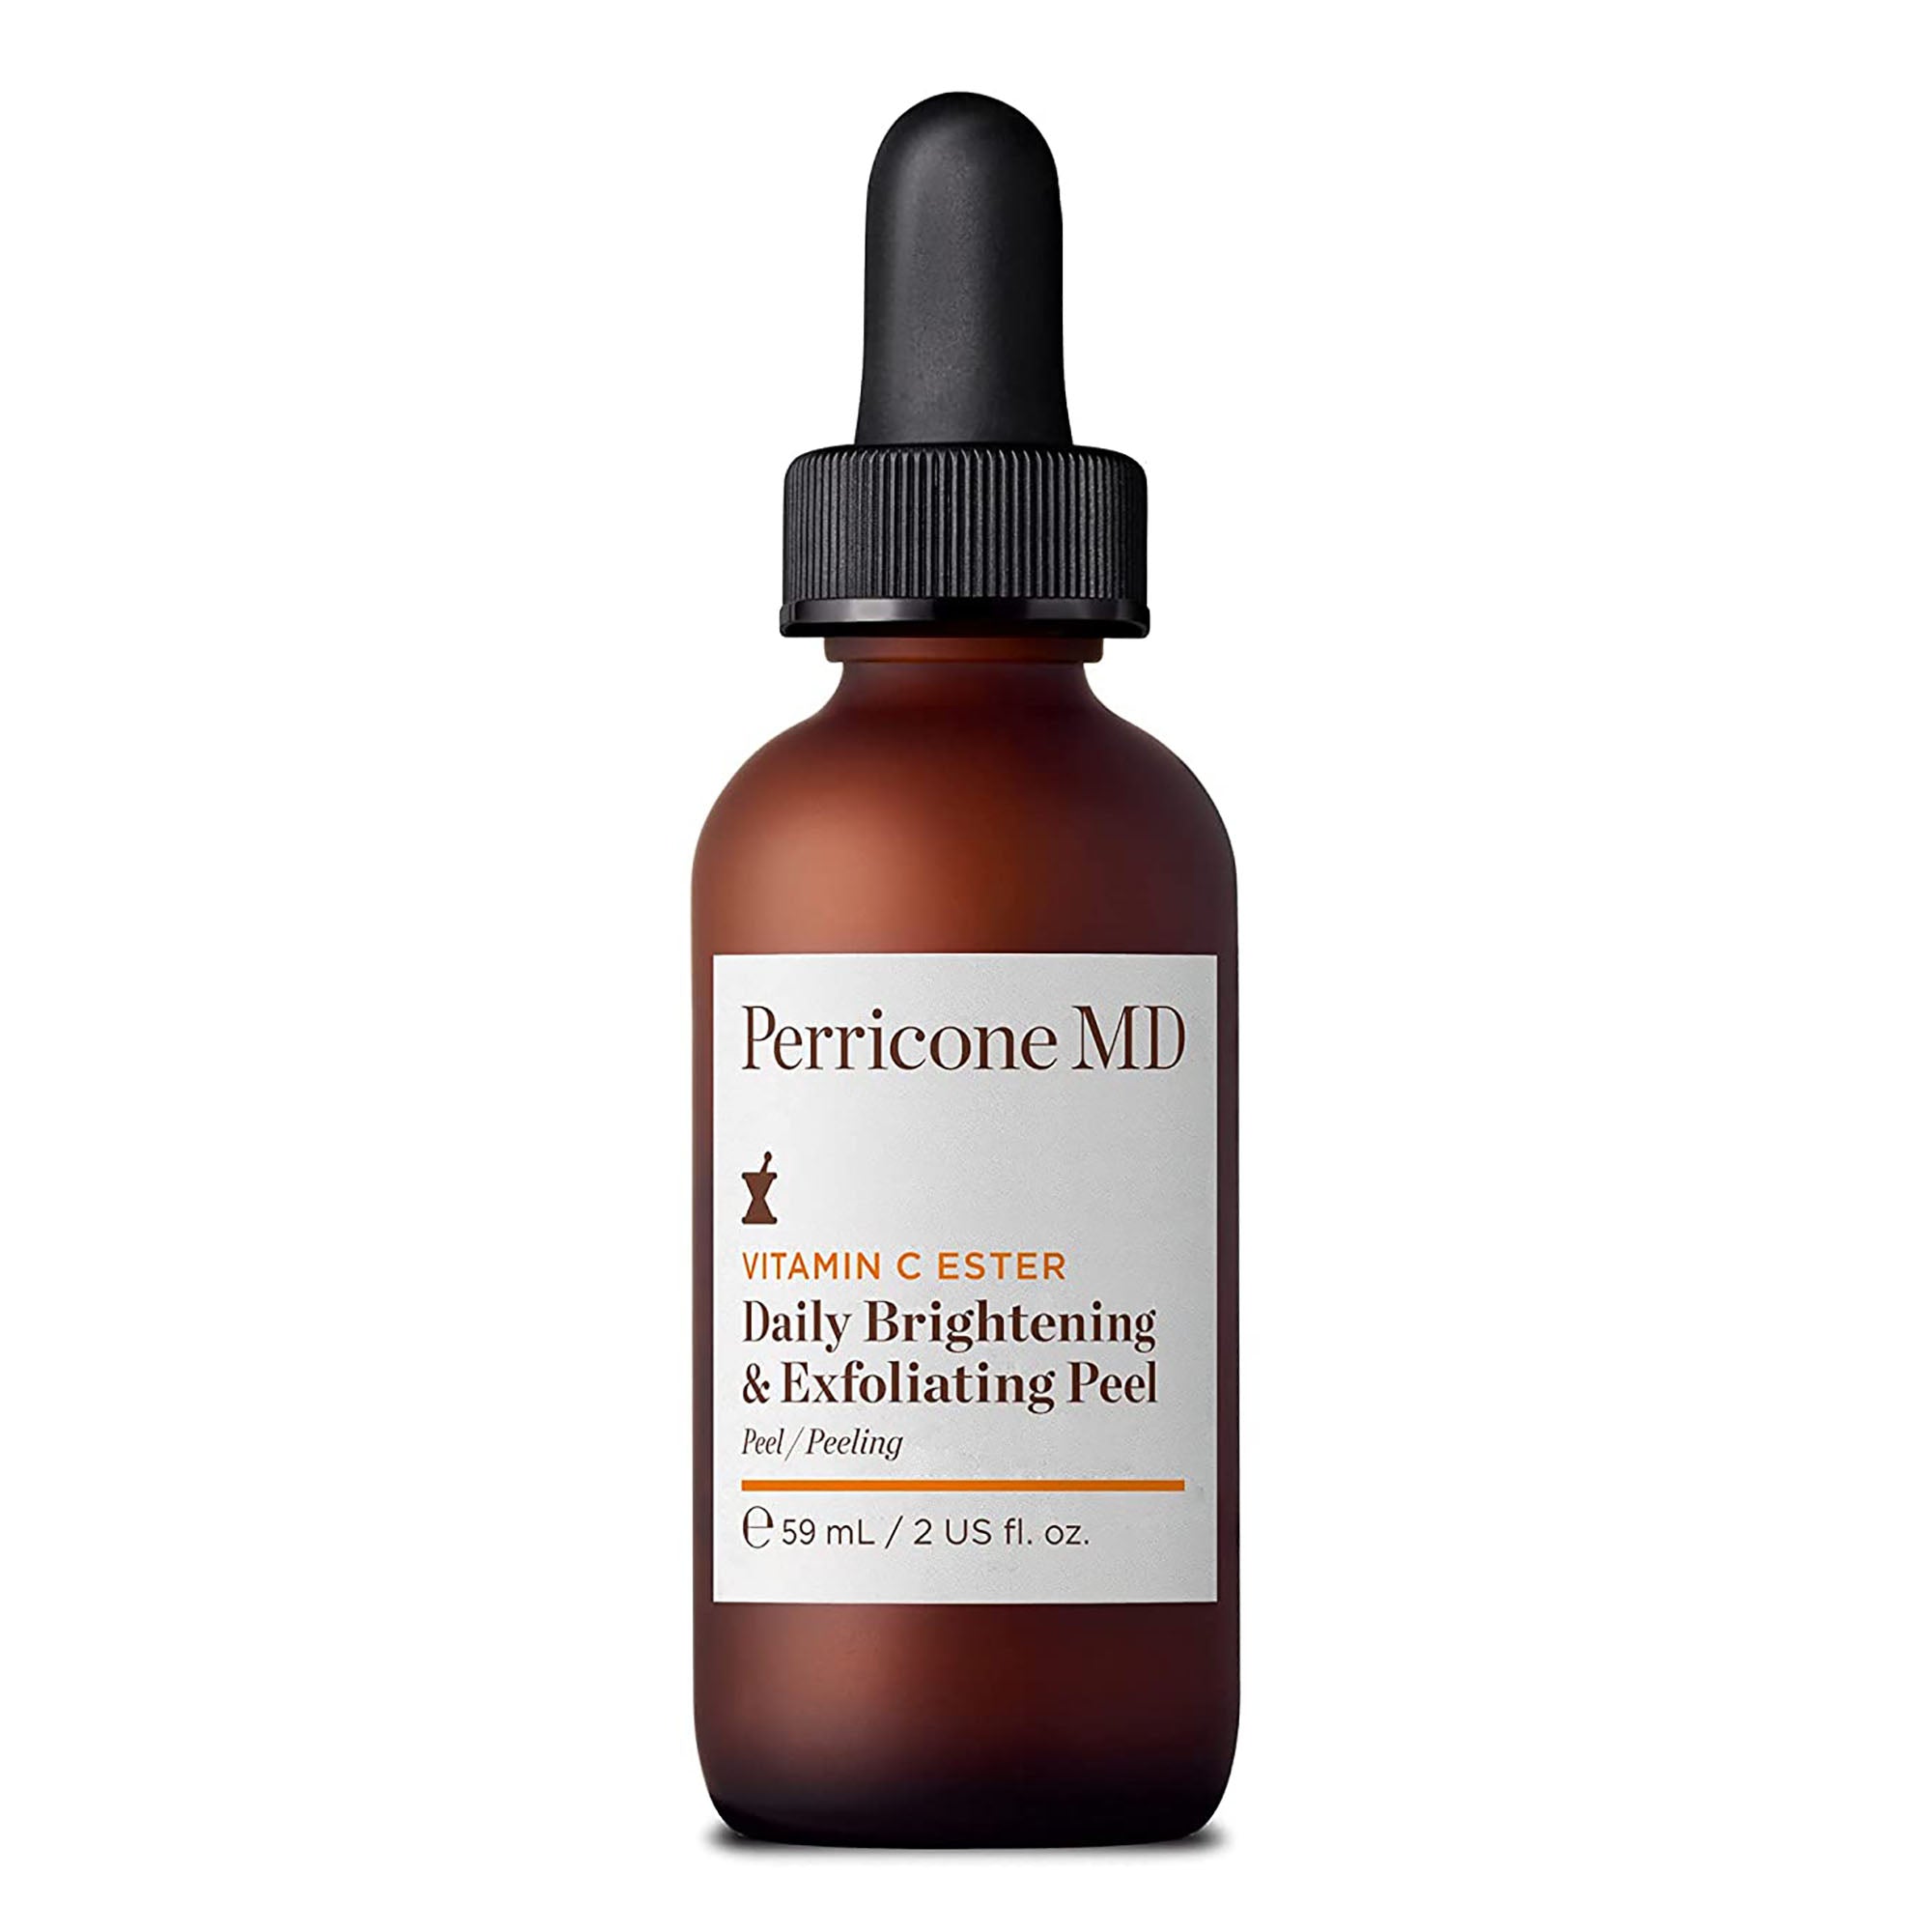 Perricone MD Vitamin C Ester Daily Brightening & Exfoliating Peel / 2OZ